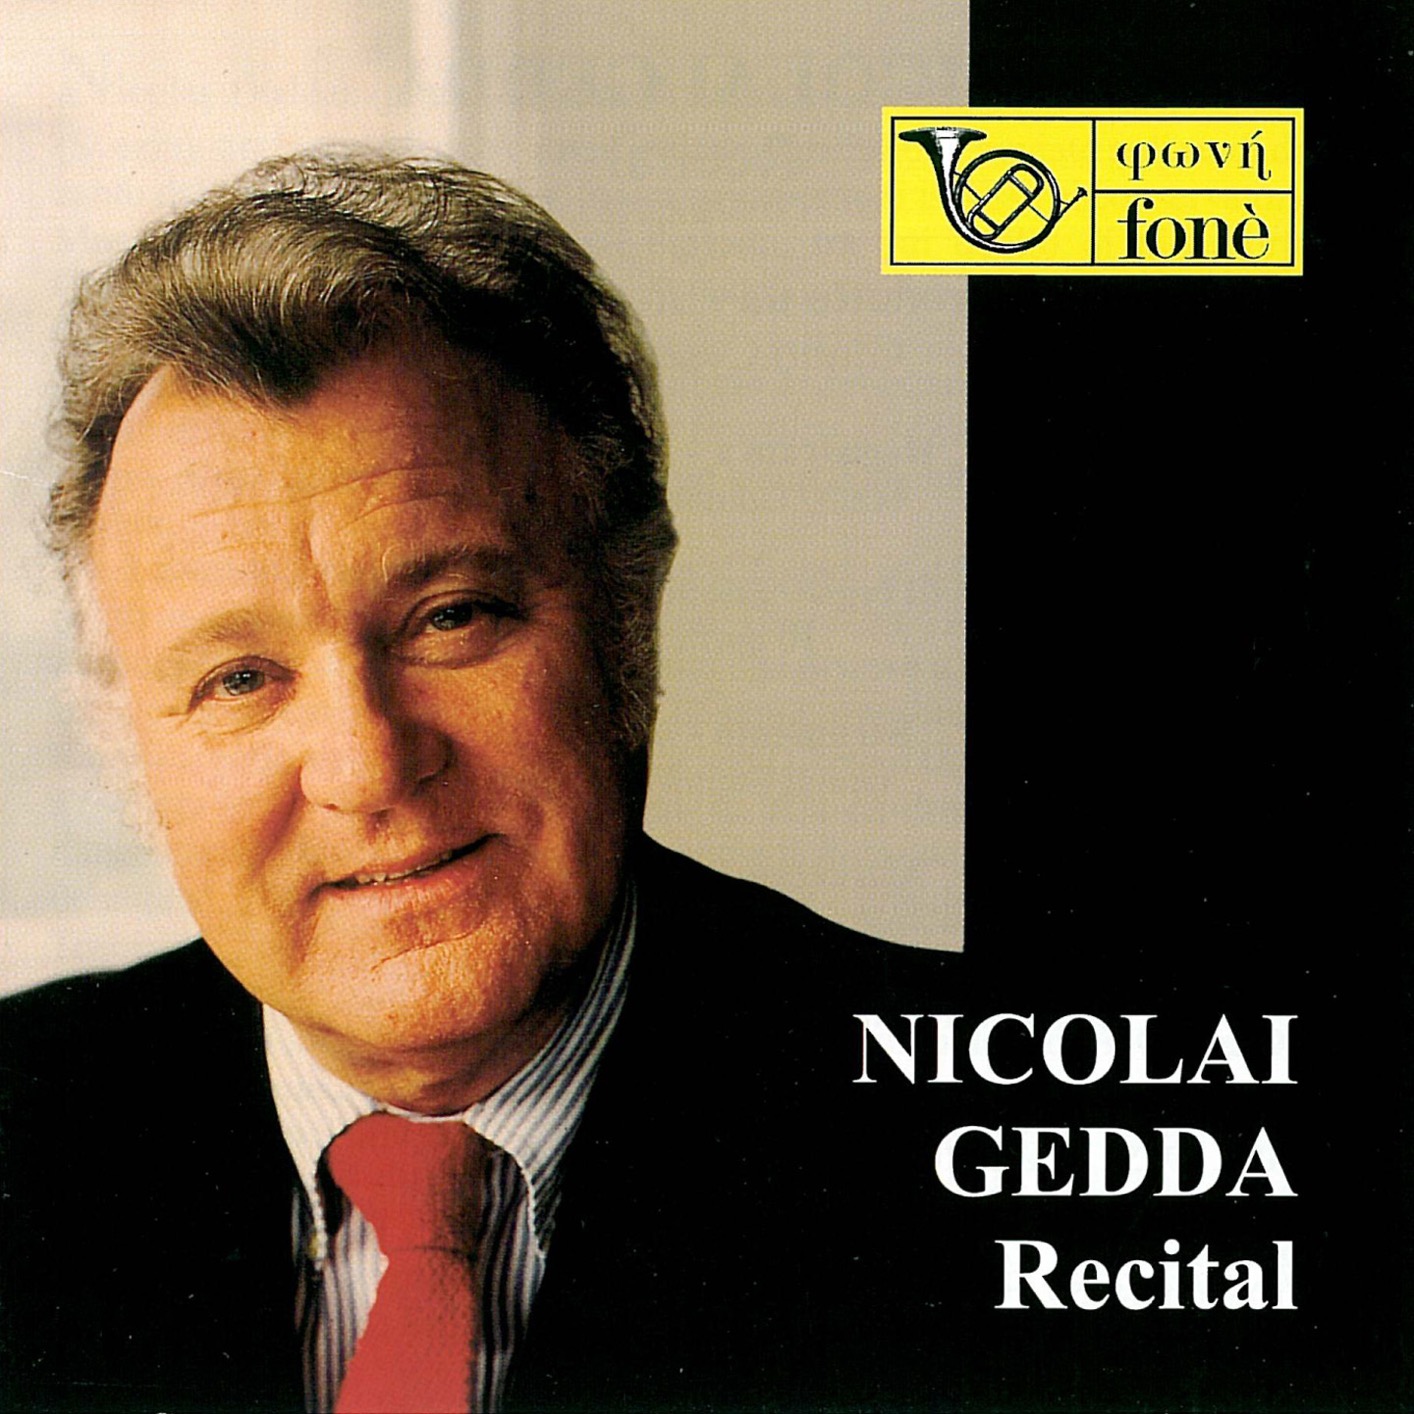 Recital Remastered Album Of Nicolai Gedda Buy Or Stream Highresaudio